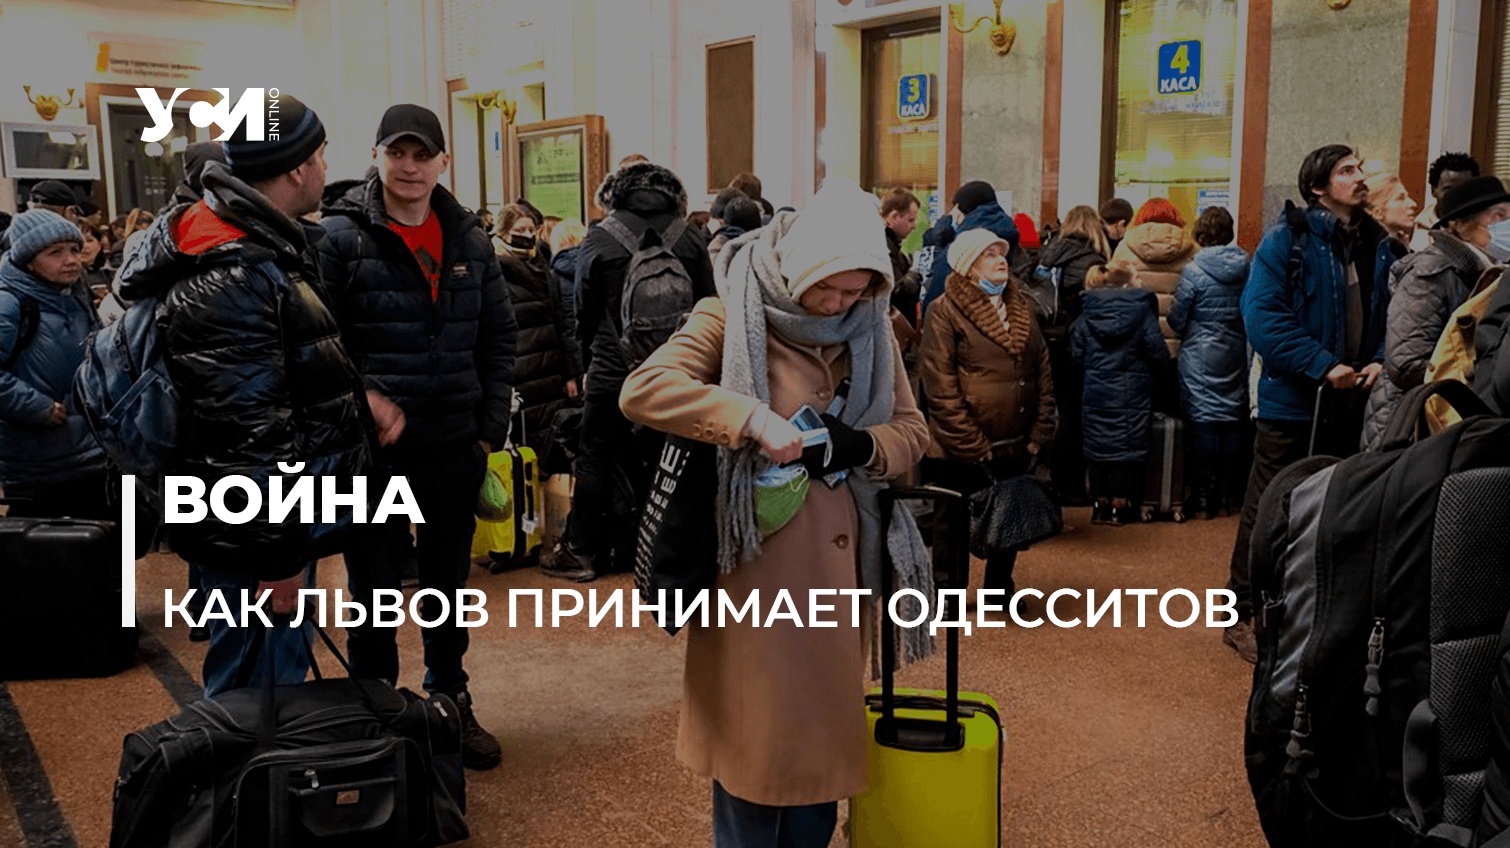 Одессит во Львове: здесь сейчас вся Украина «фото»